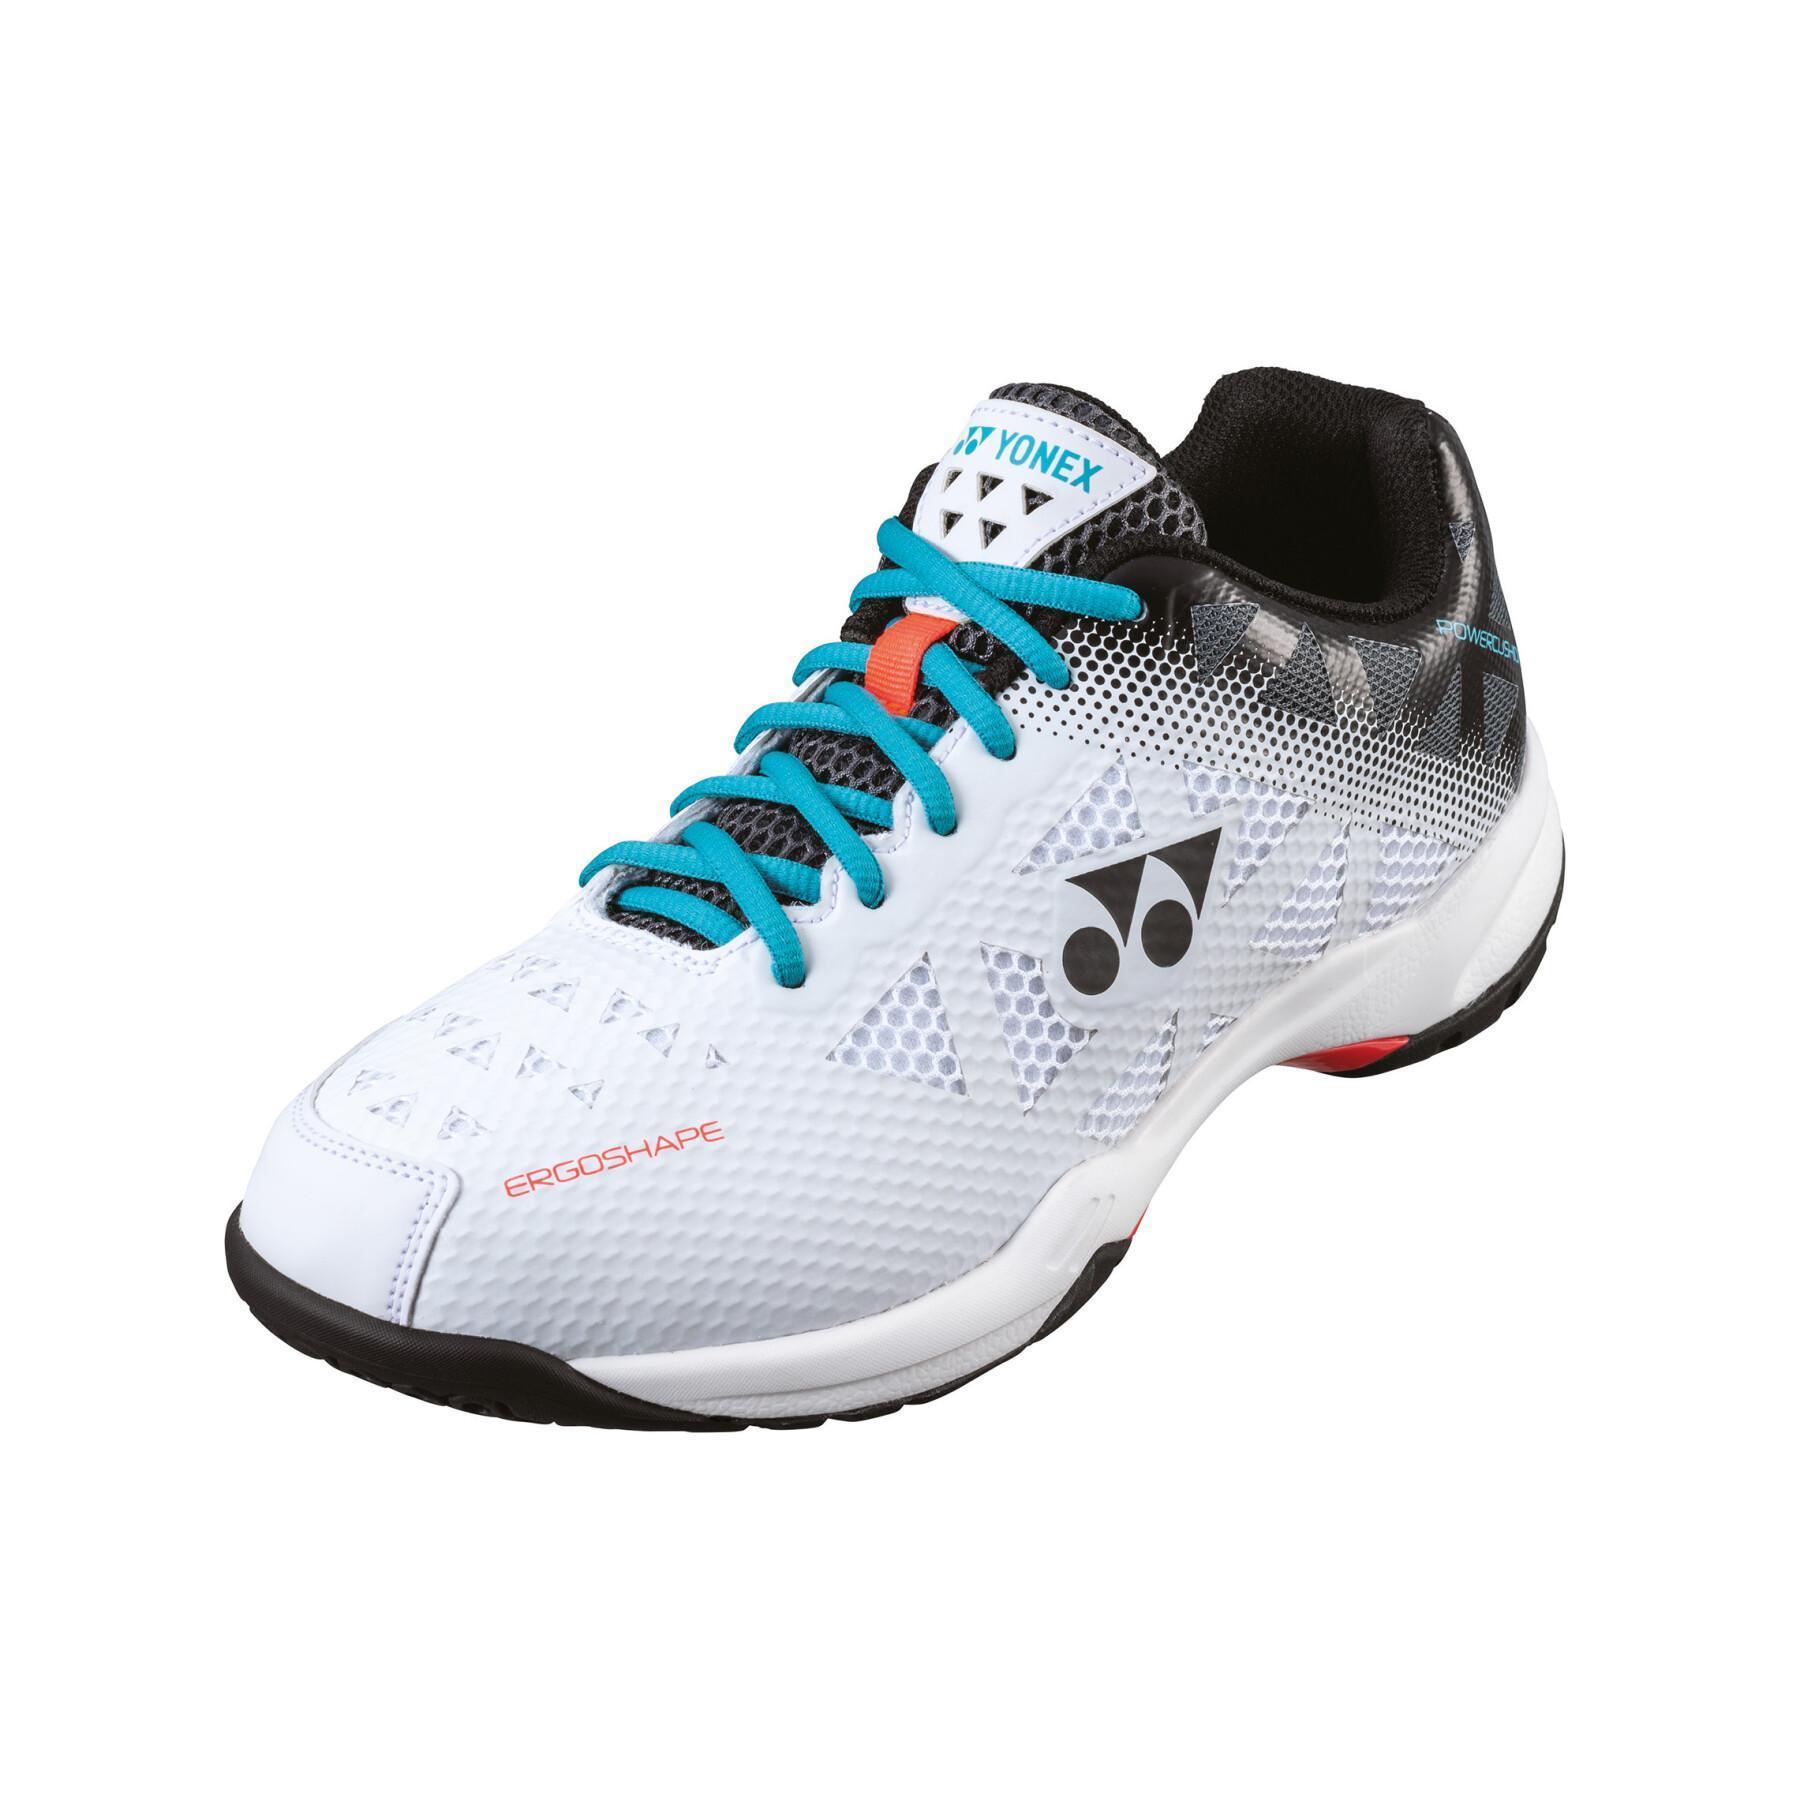 Women's badminton shoes Yonex PC 50